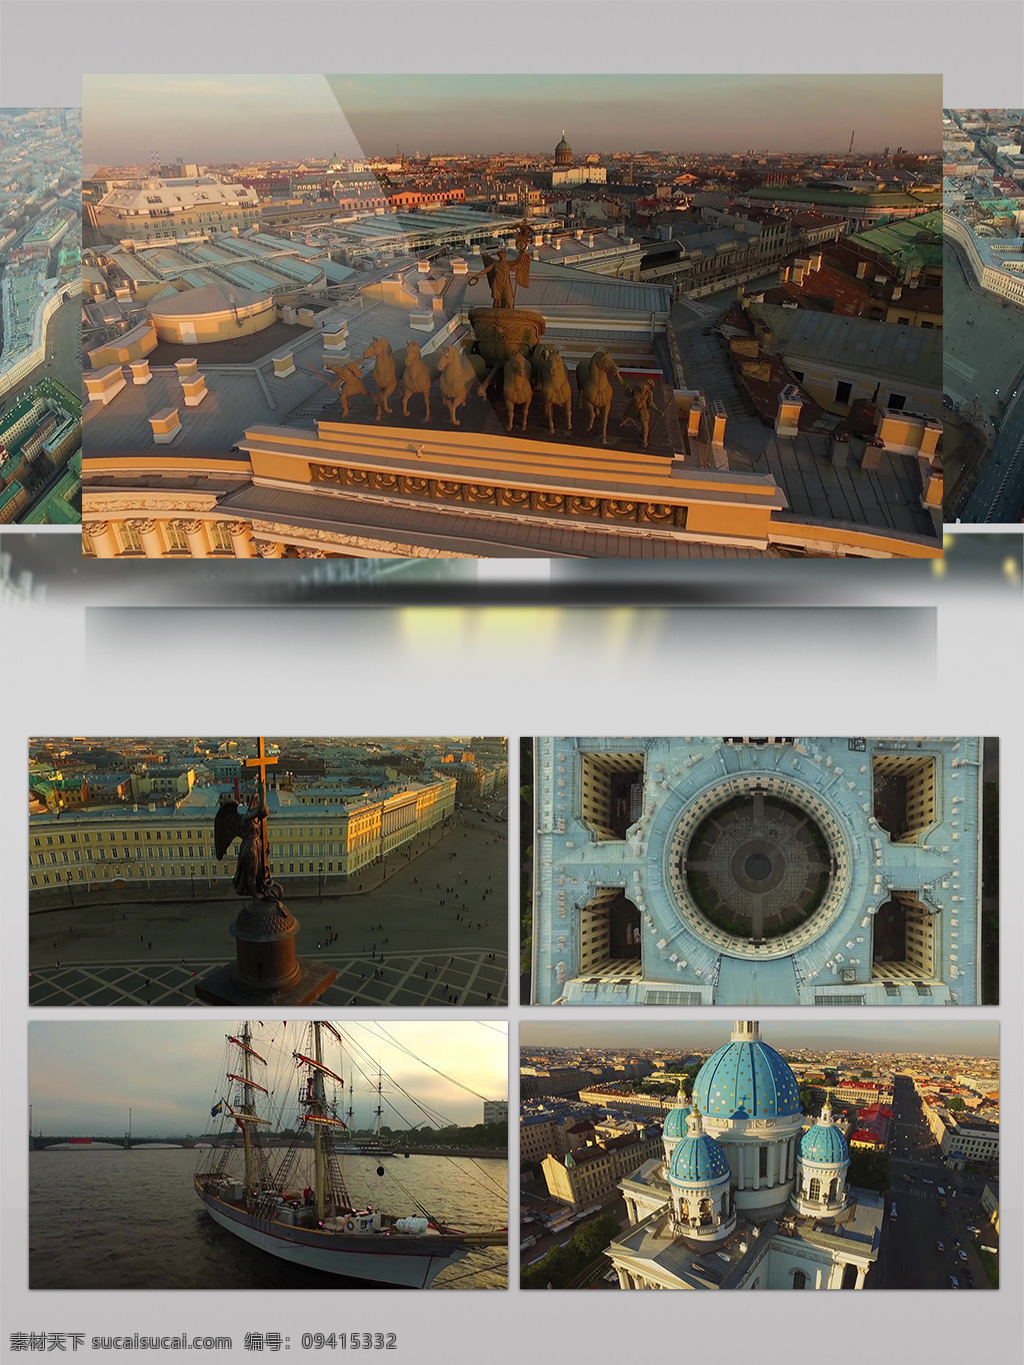 2k 俄罗斯 叶卡捷琳堡 城市旅游 景观 人文 宣传片 城市景观 风景 建筑 历史 旅游